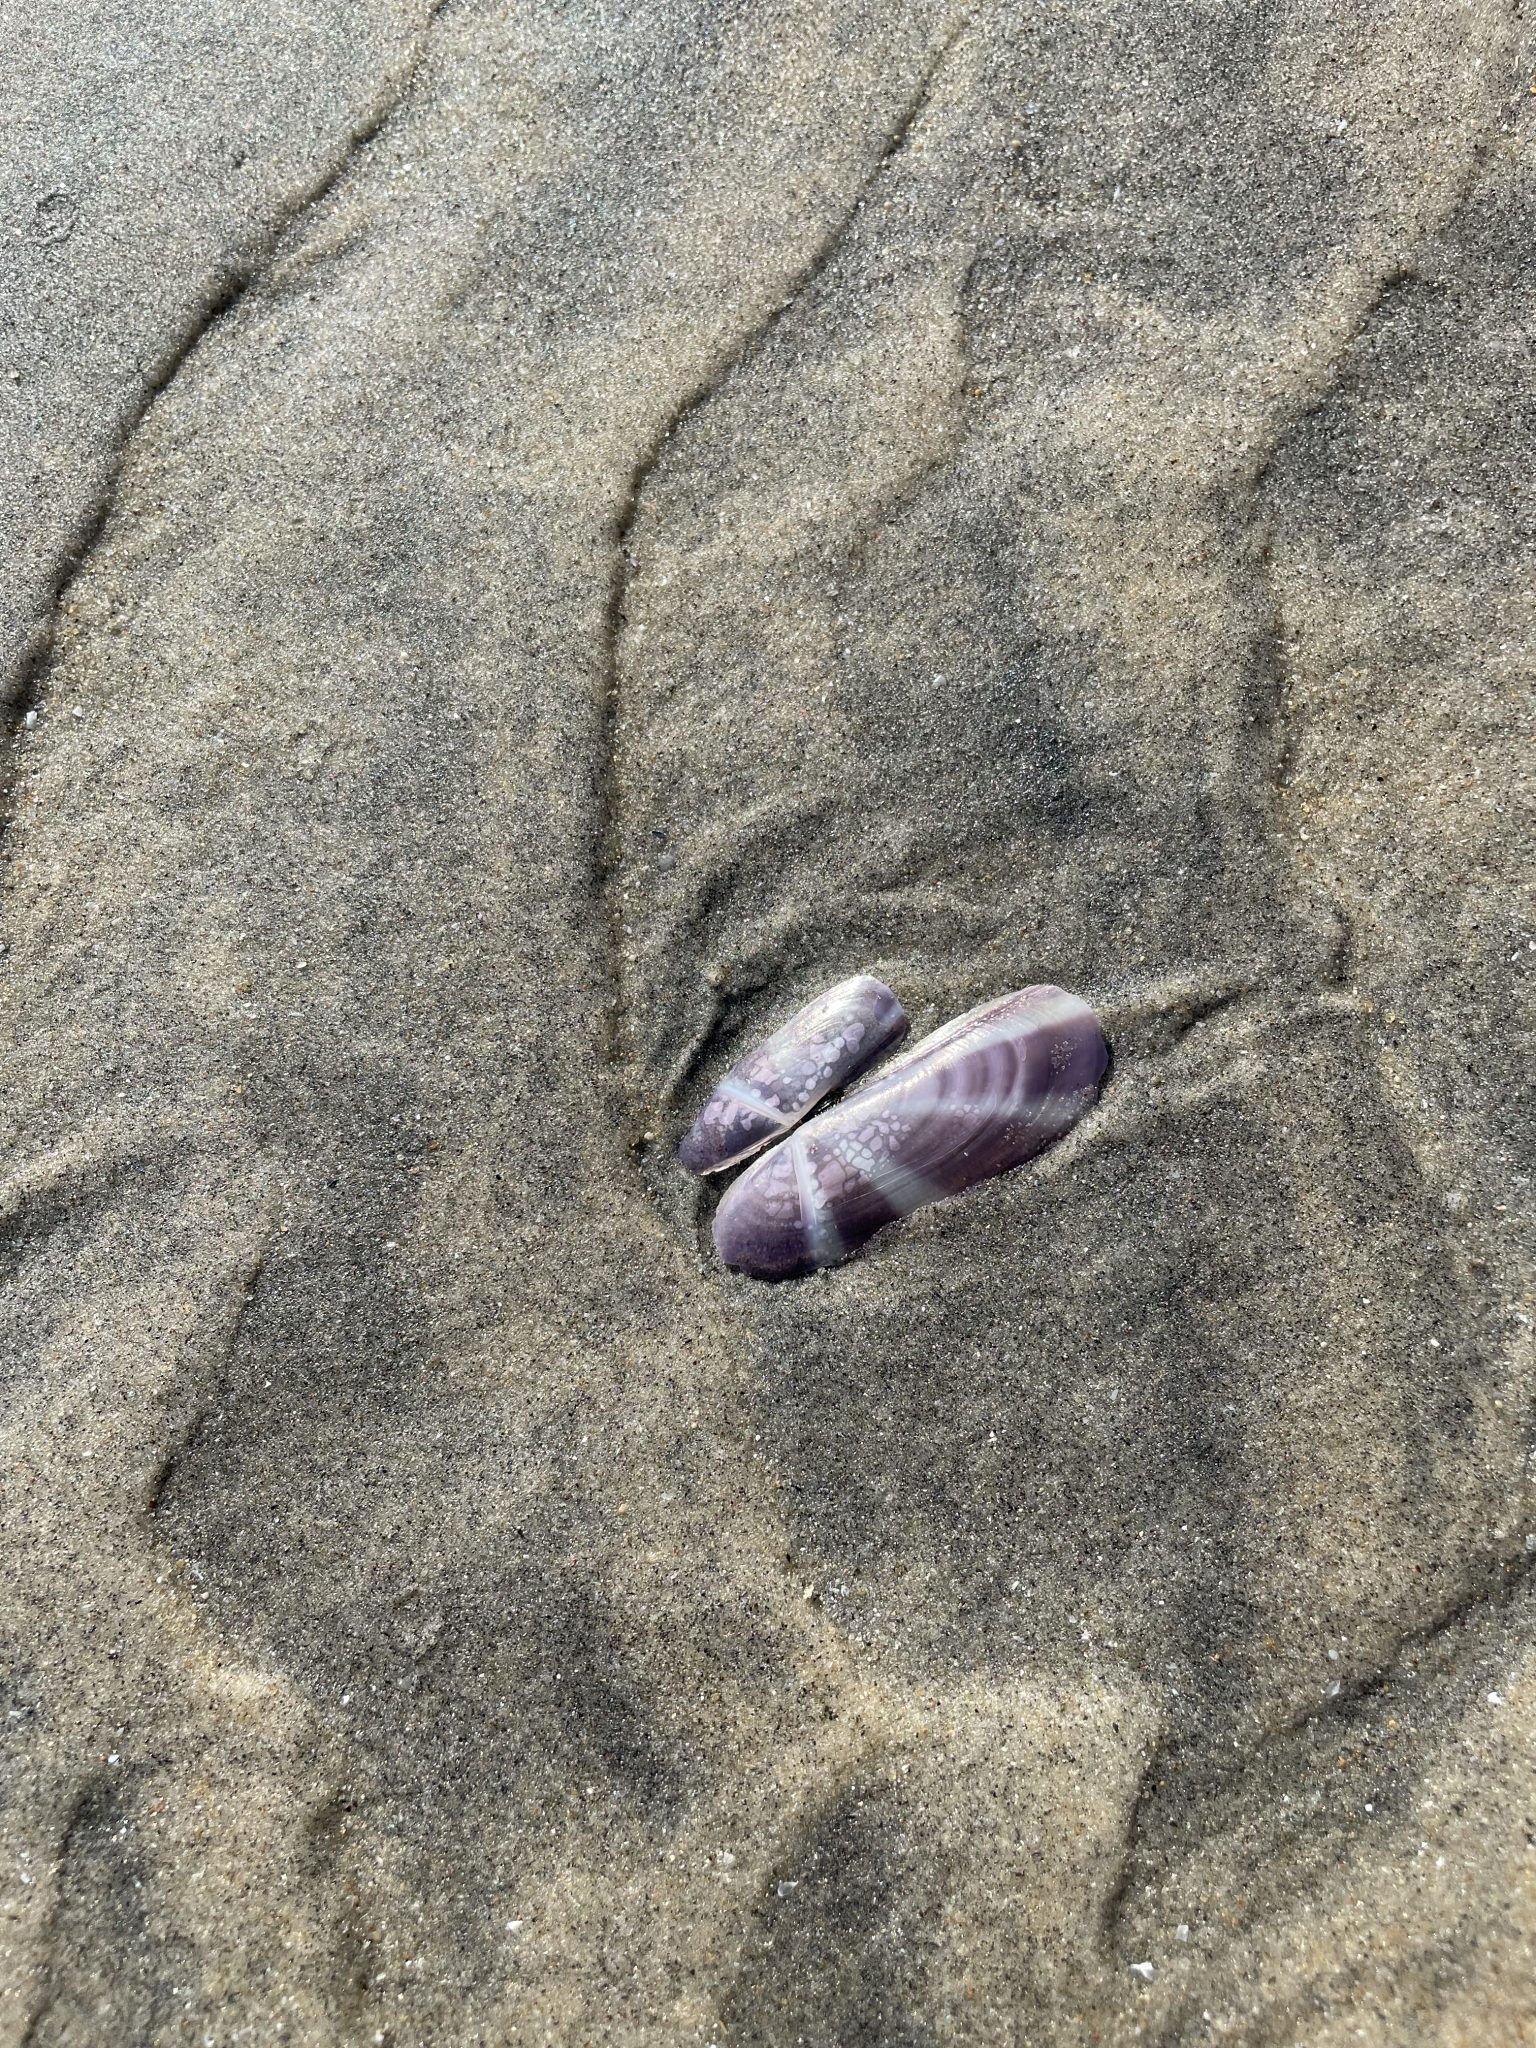 Seashell. From Kozhikode, Kerala, India